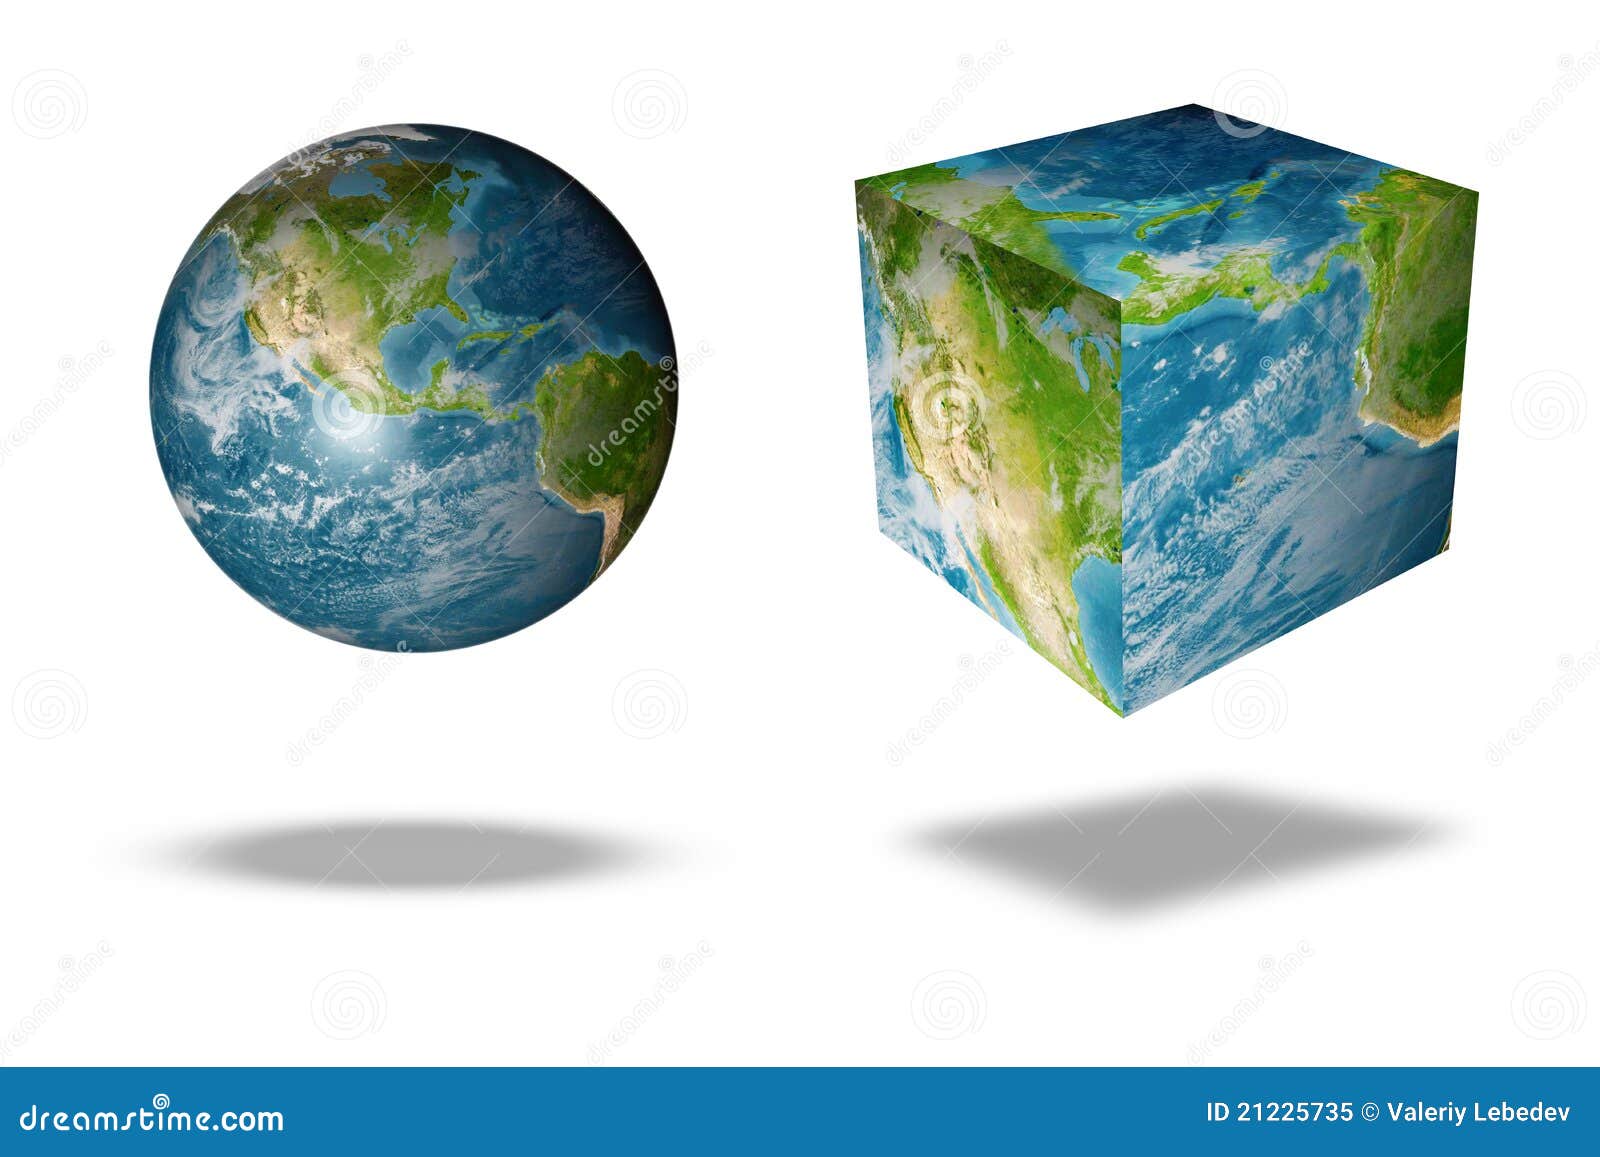 Где квадратная земля. Квадратная земля. Квадратная земля Глобус. Глобус квадрат. Квадратик земли.